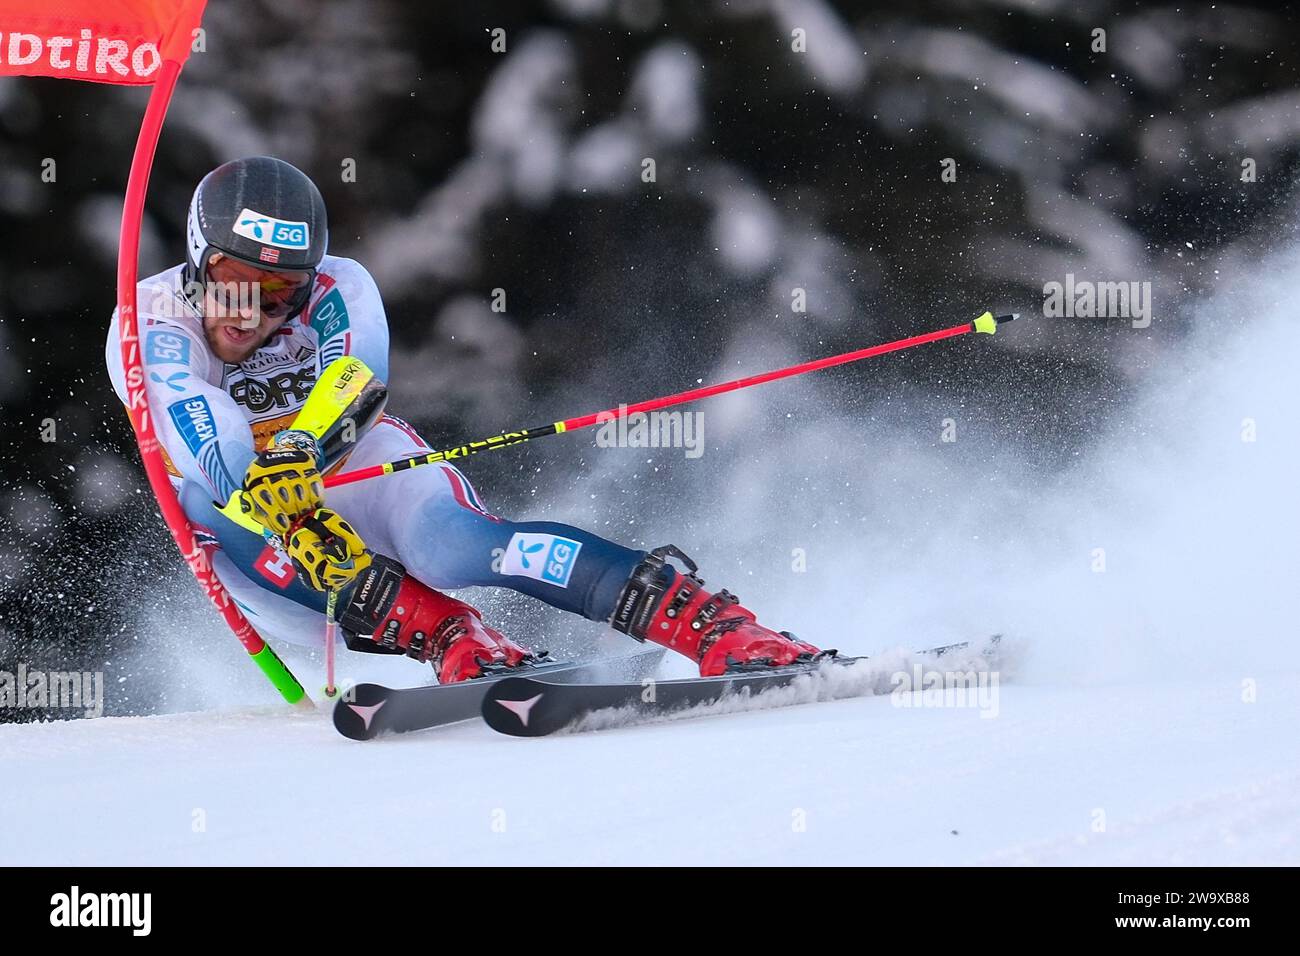 Aleksander Aamodt Kilde (NOR) gareggia durante la Coppa del mondo di sci alpino Audi FIS, MenÕs gara di slalom gigante sulla pista Gran Risa, alta Badia il 17 dicembre Foto Stock